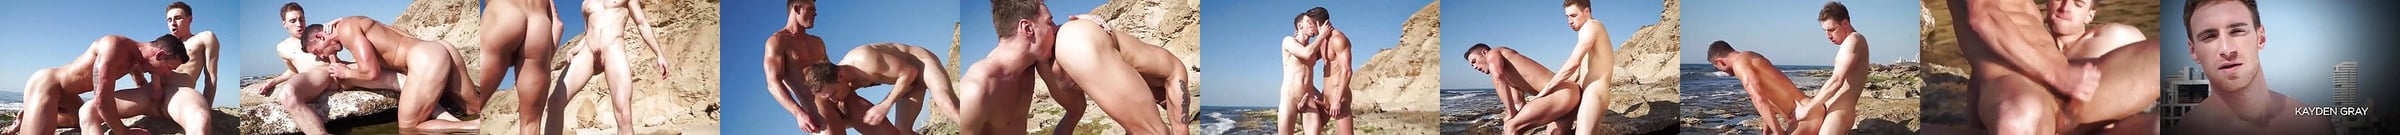 Men Of Israel Sc01 Matan Shalev And Naor Tal Gay Porn 9e Xhamster